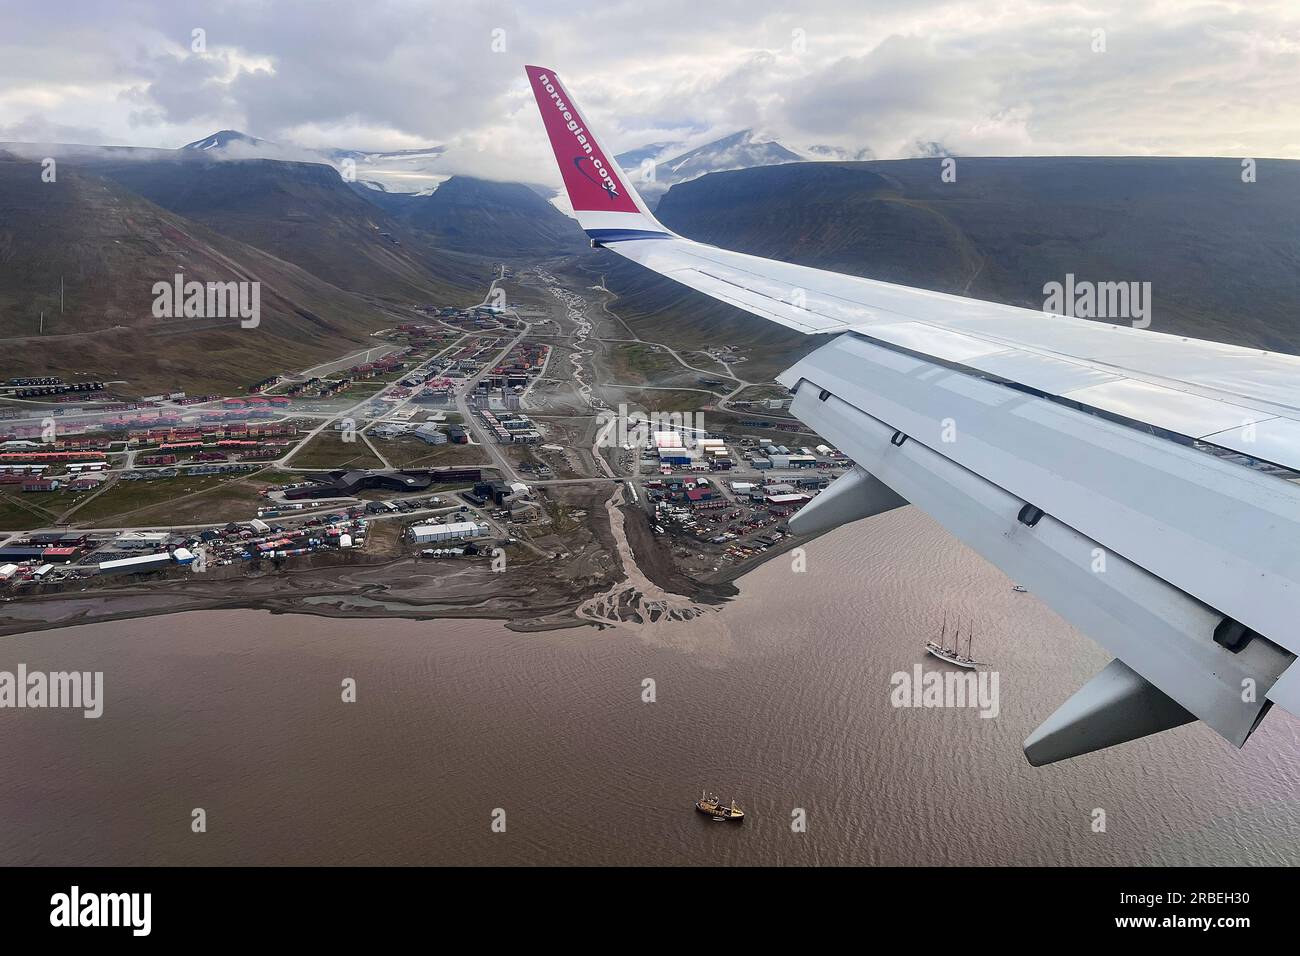 Fotografía desde la ventana de la cabina de un vuelo de una aerolínea noruega cuando llega a tierra en el aeropuerto de Longyearbyen Foto de stock